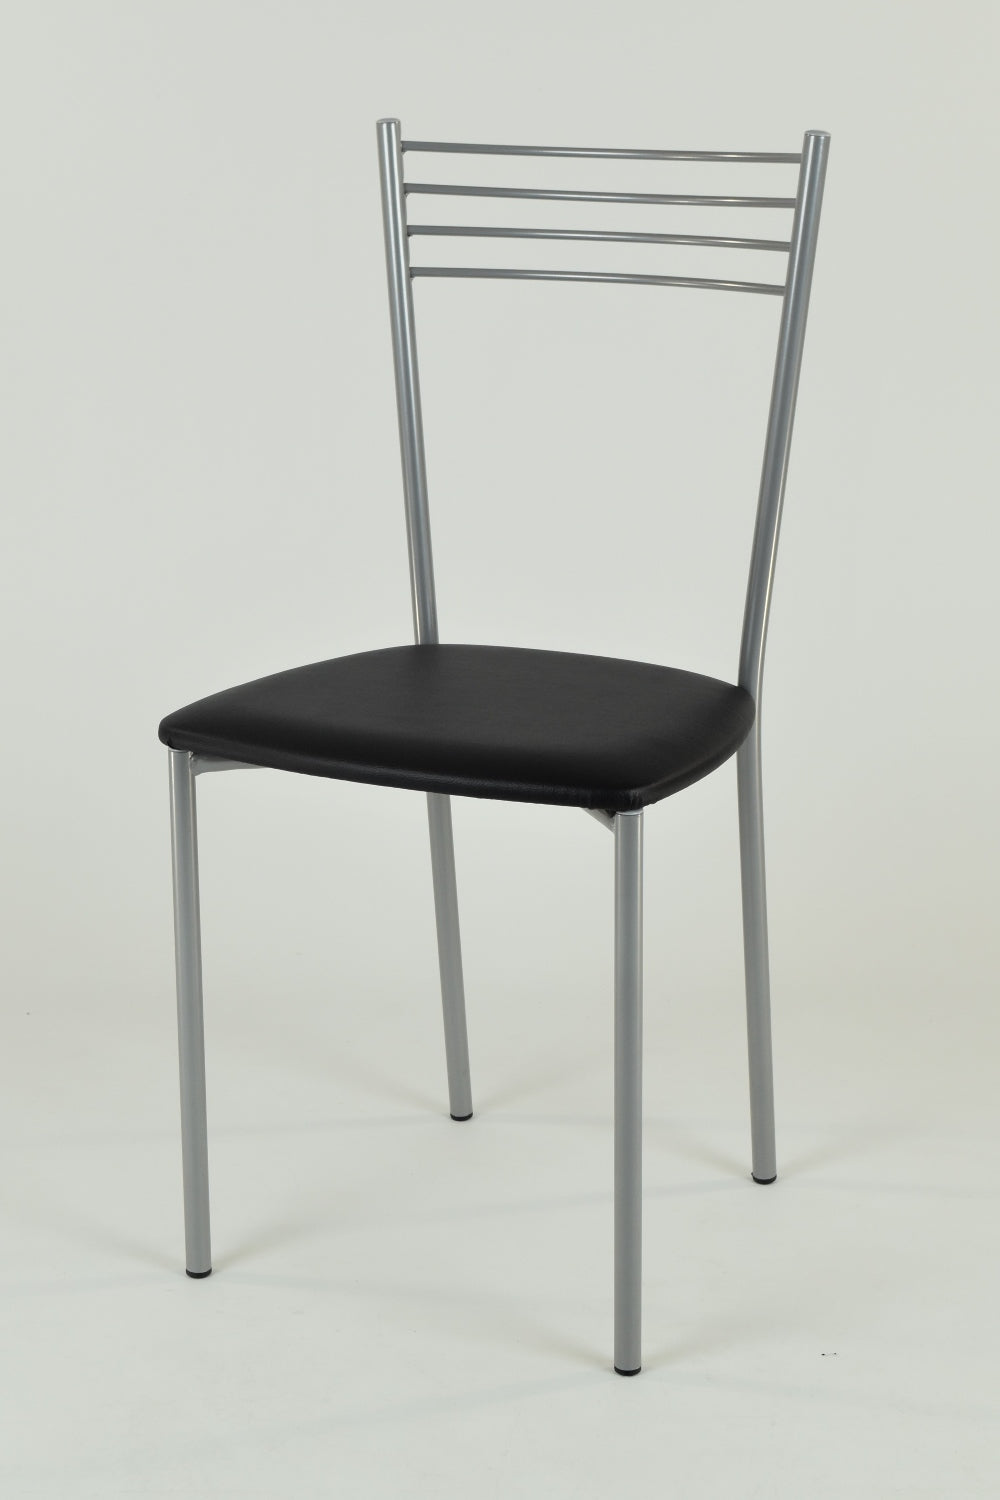 Tommychairs - Set 4 sillas de Cocina y Restaurante Elena, Estructura en Acero Pintado Aluminio, Asiento en Polipiel Color Negro